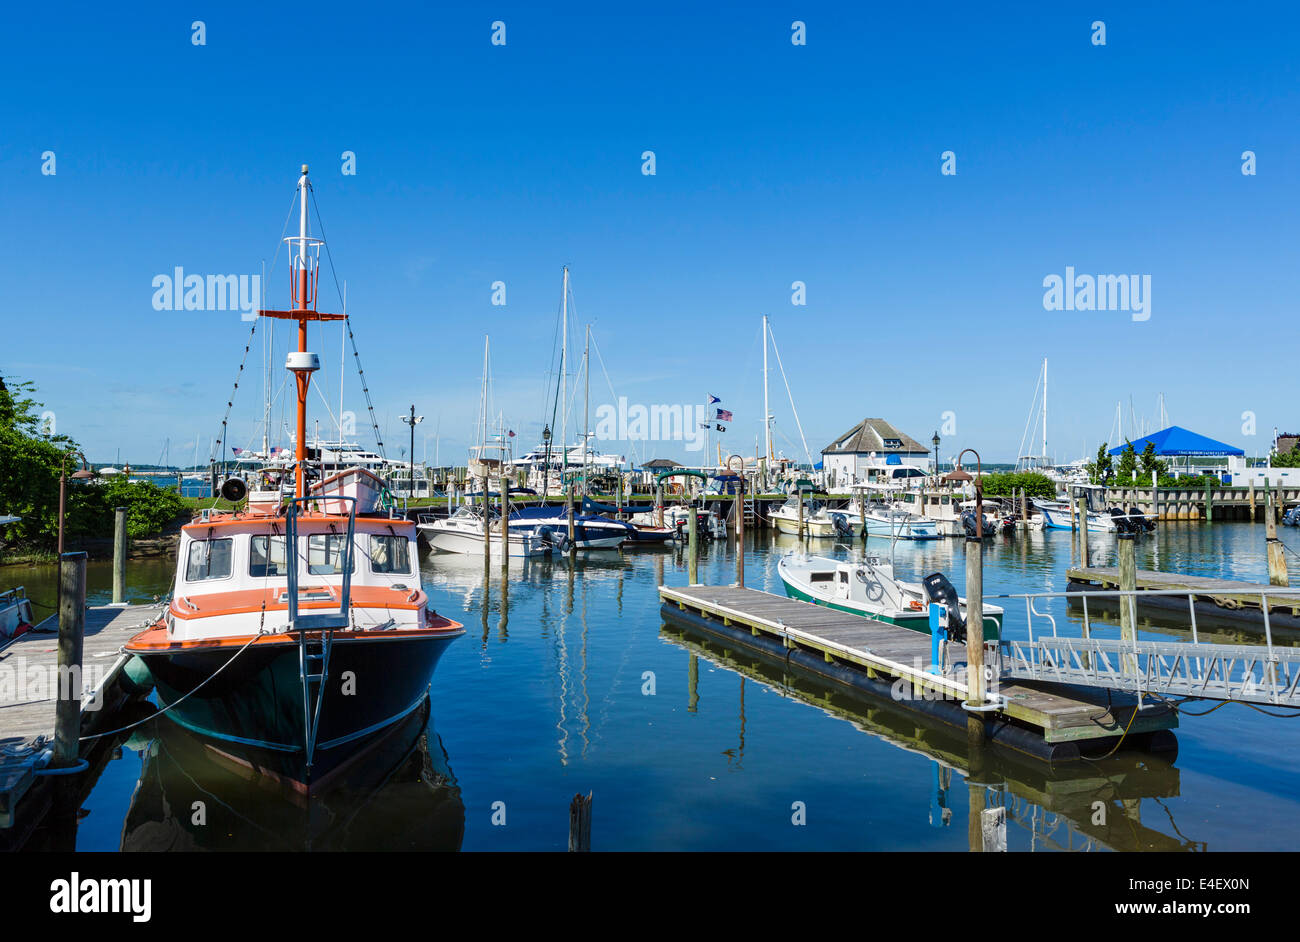 Port dans le village de Sag Harbor, comté de Suffolk, Long Island, NY, USA Banque D'Images